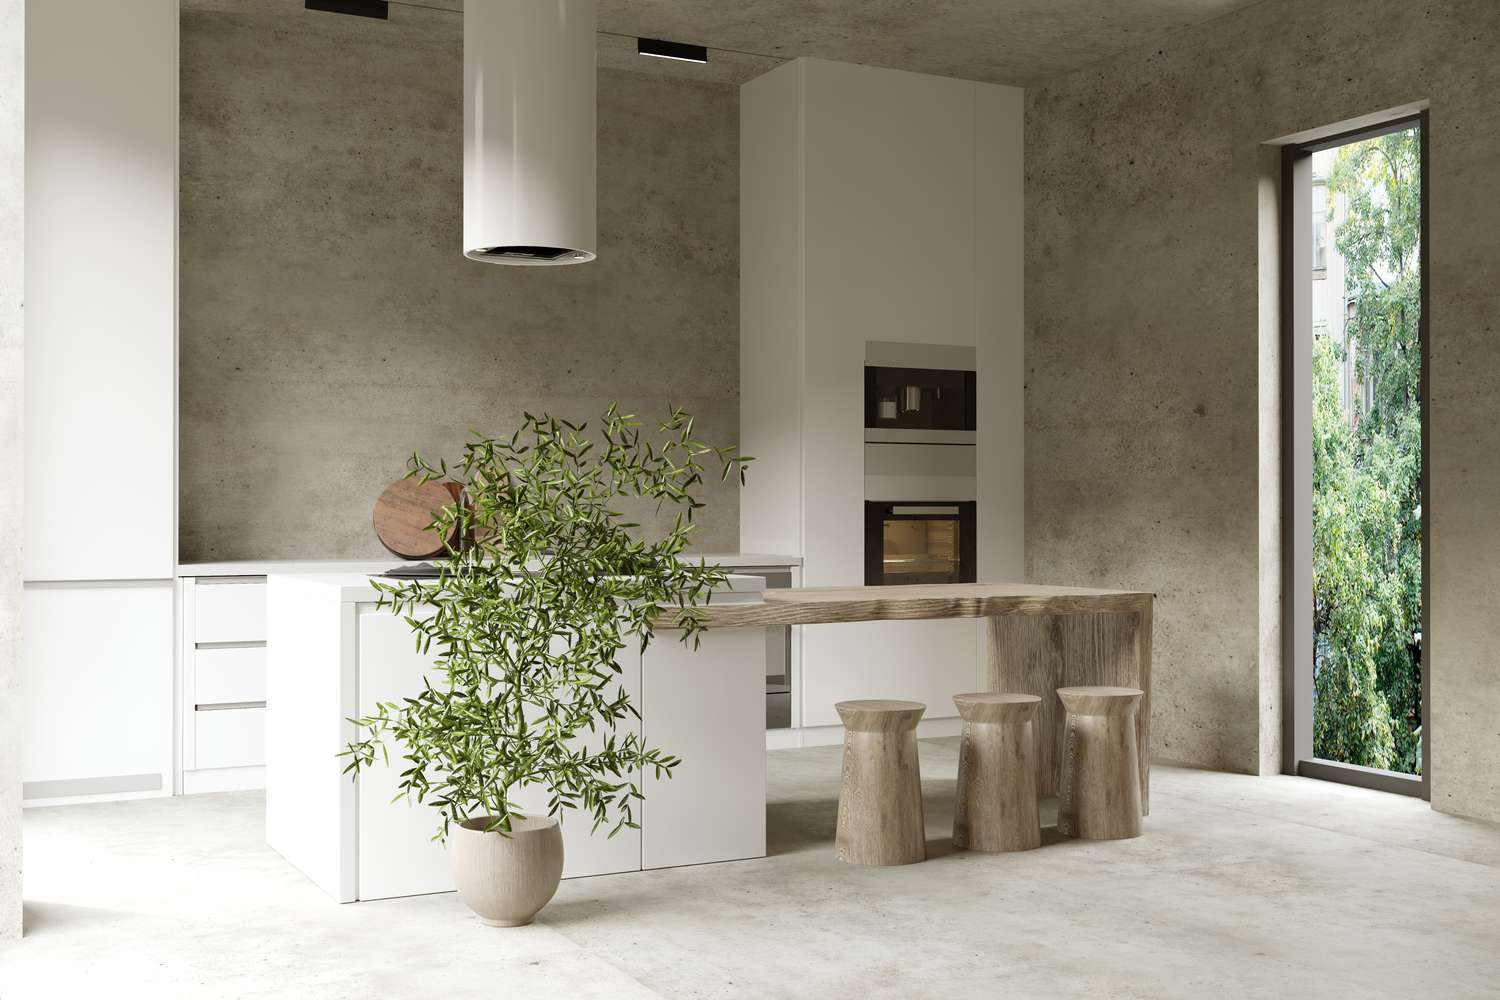 Interior de cocina con barra de bar de madera y pared y suelo de hormigón